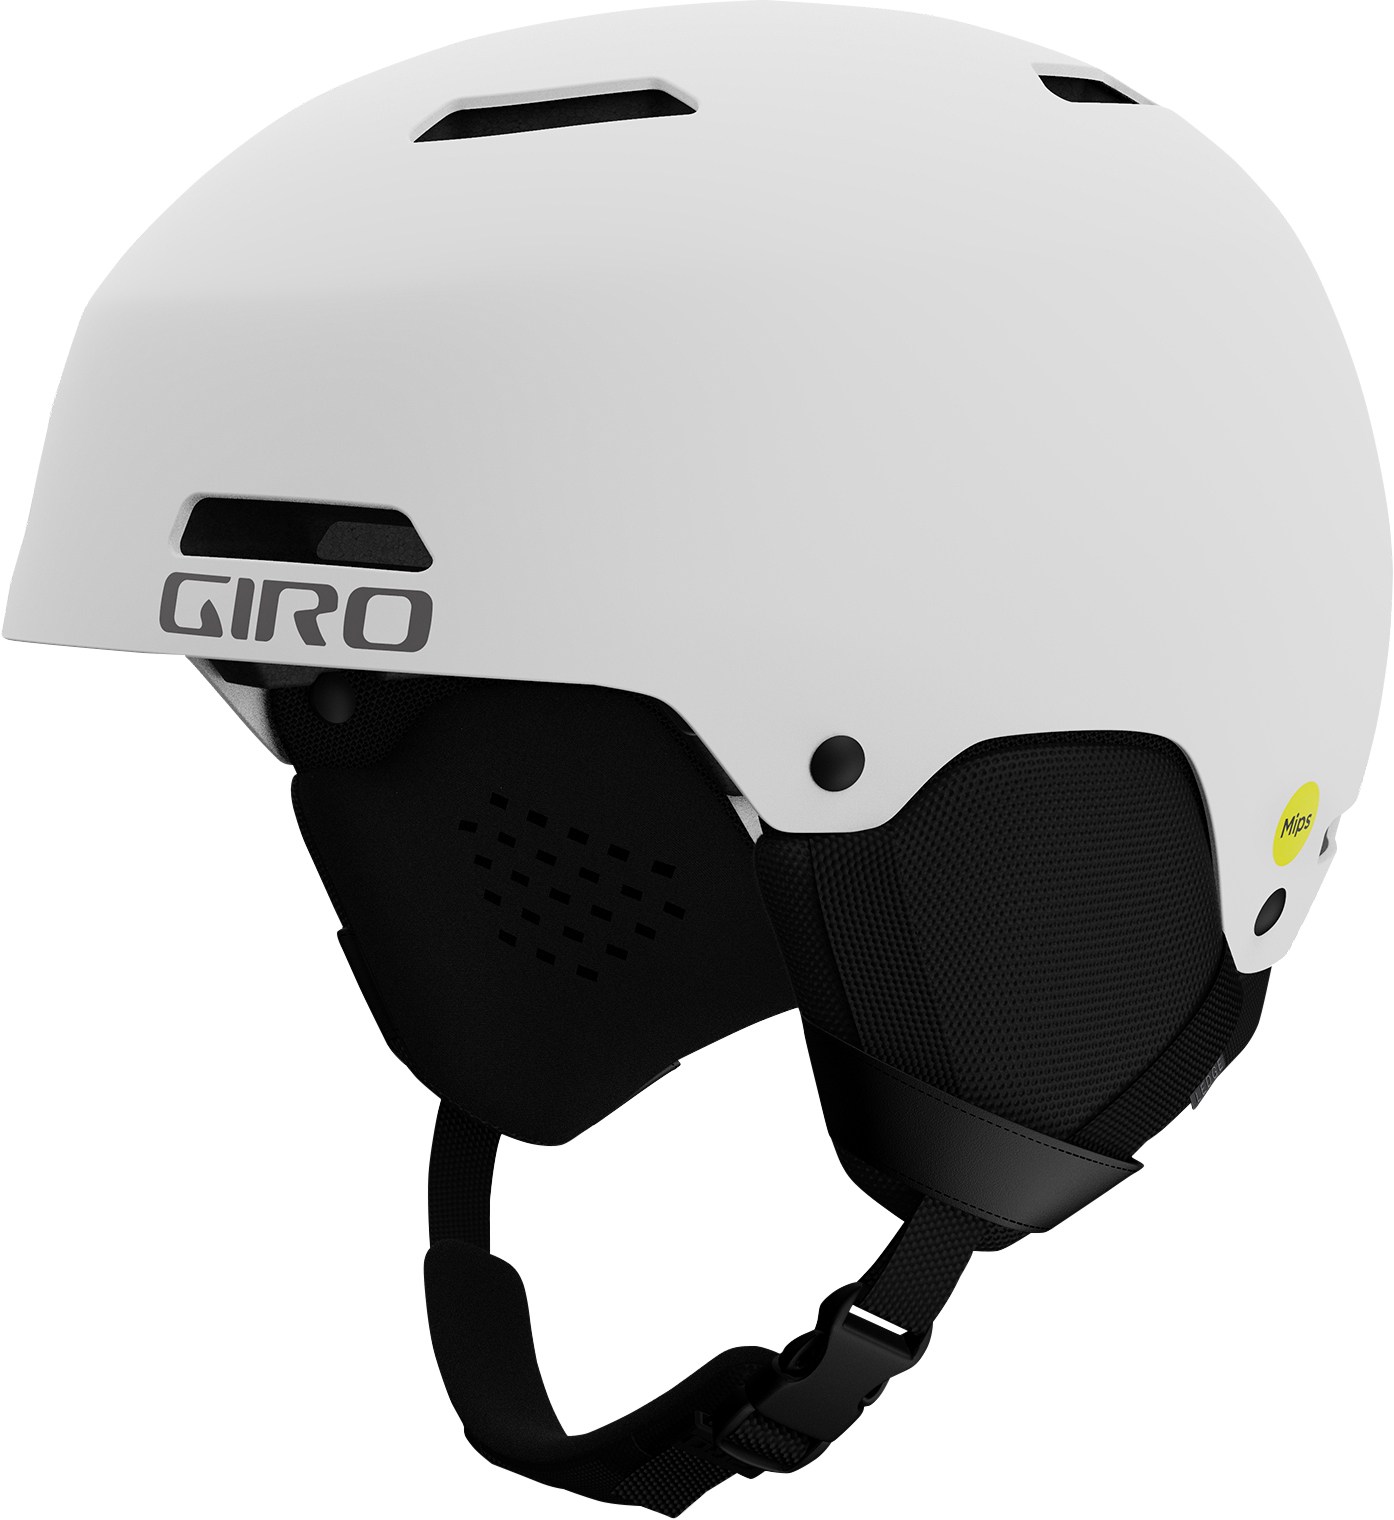 Снежный шлем Ledge Mips Giro, белый